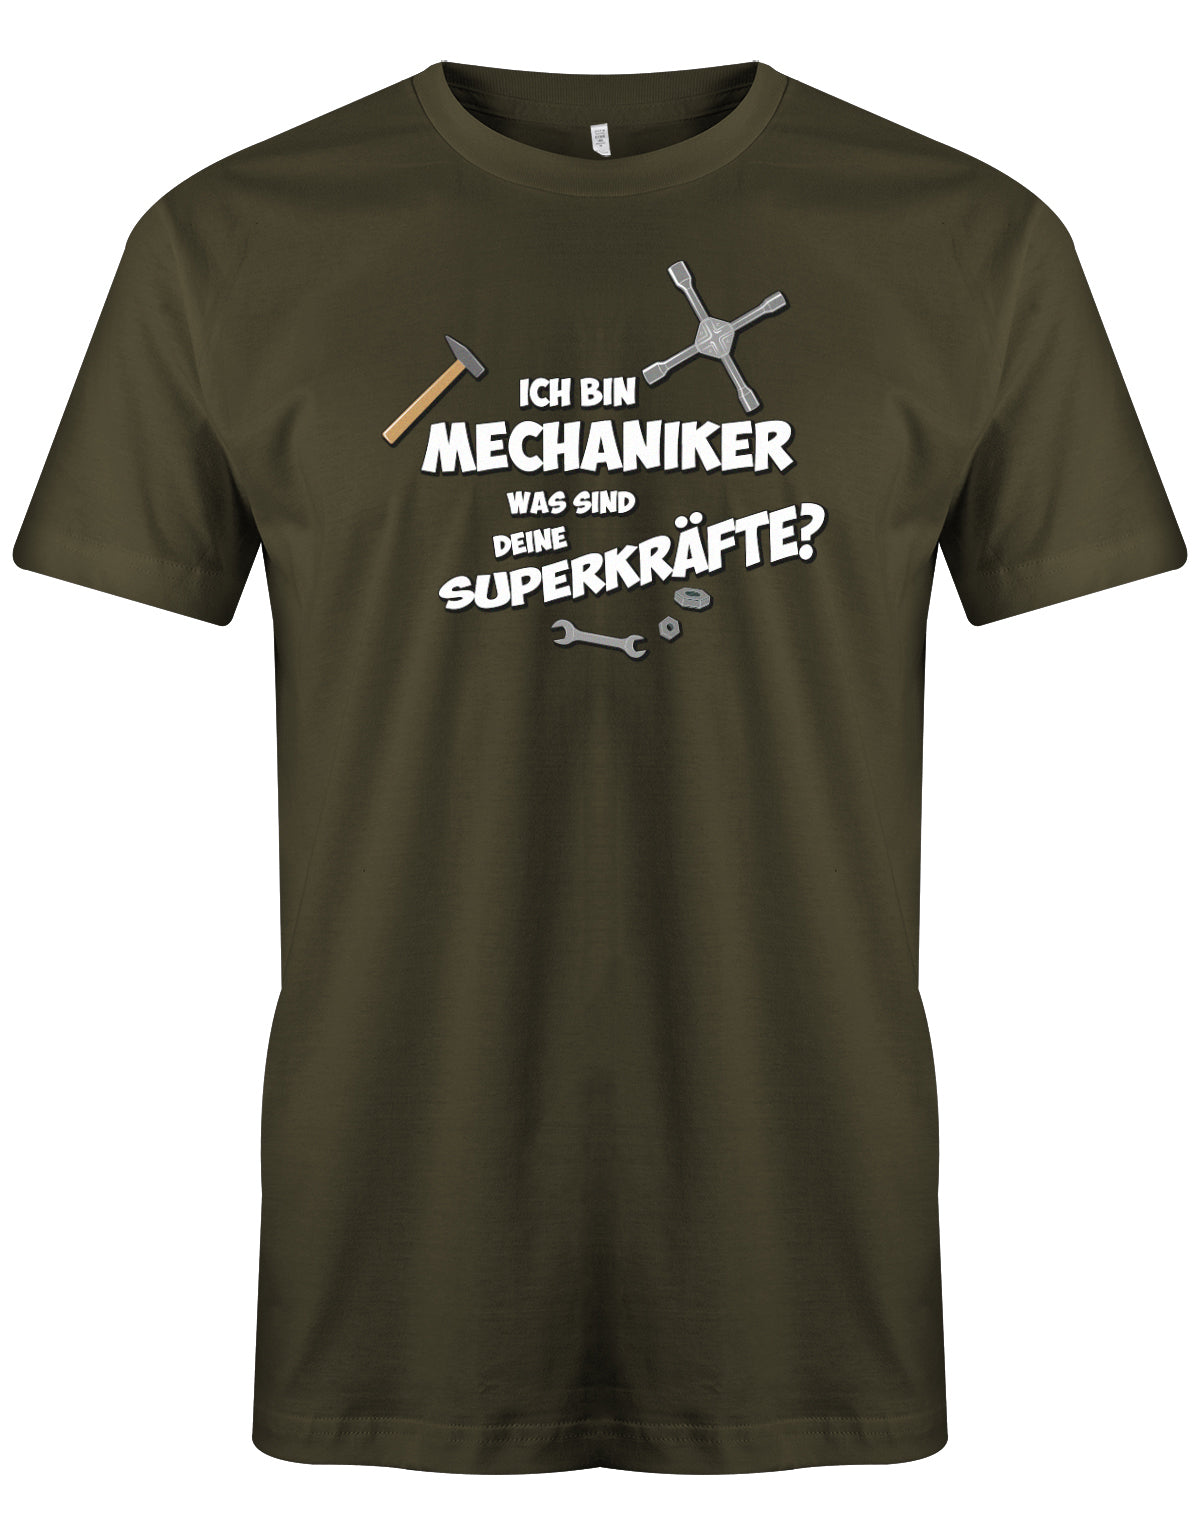 KFZ Mechaniker Shirt - Ich bin Mechaniker was sind deine Superkräfte? Army